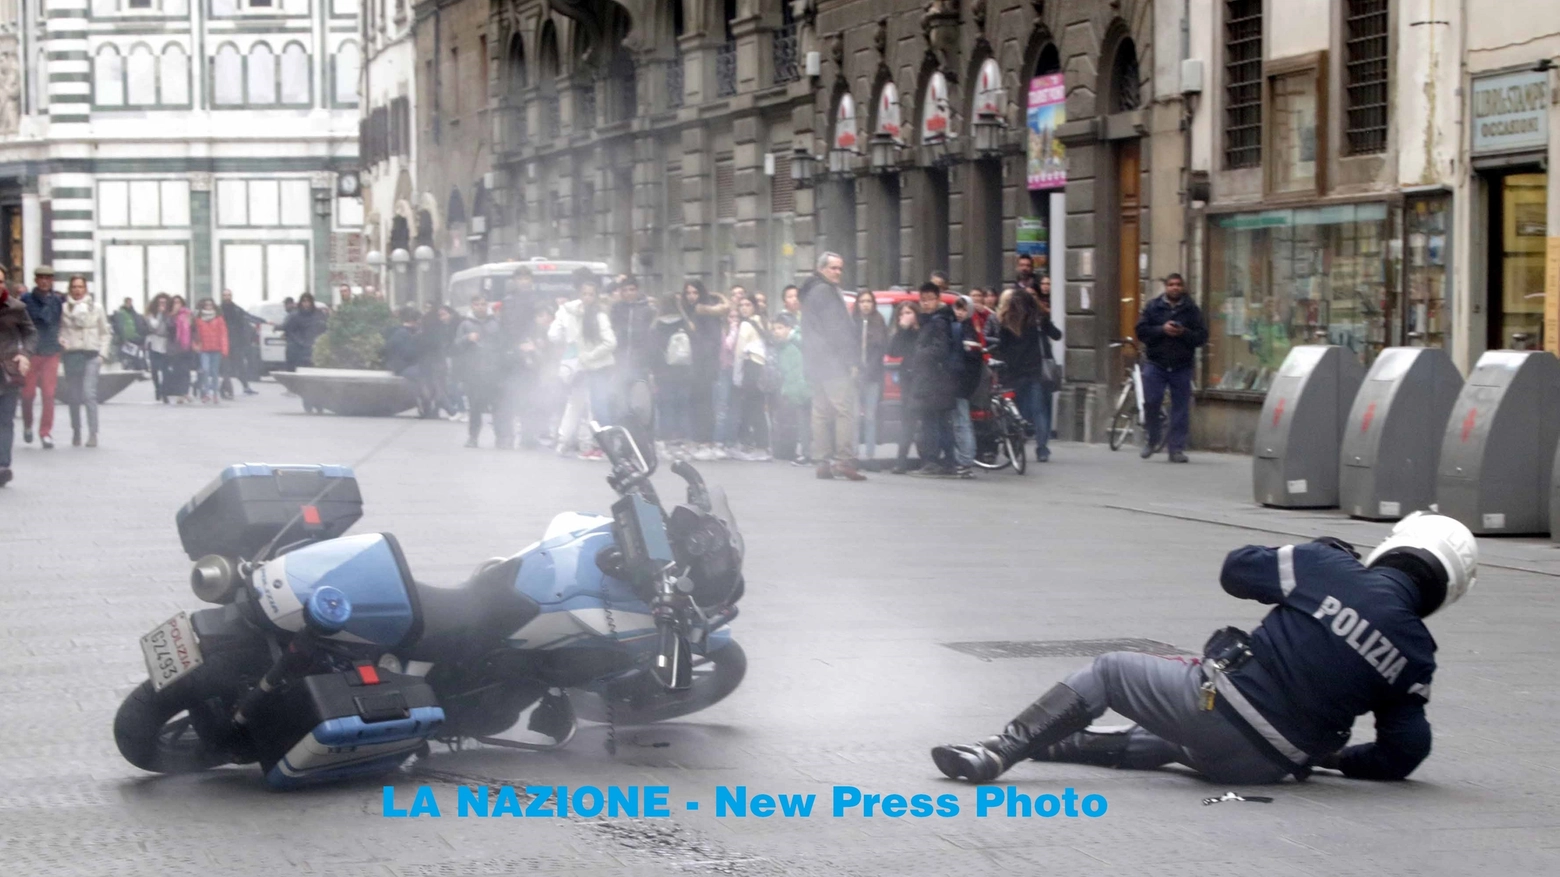 Il poliziotto mentre cade (Umberto Visintini / New Press Photo)